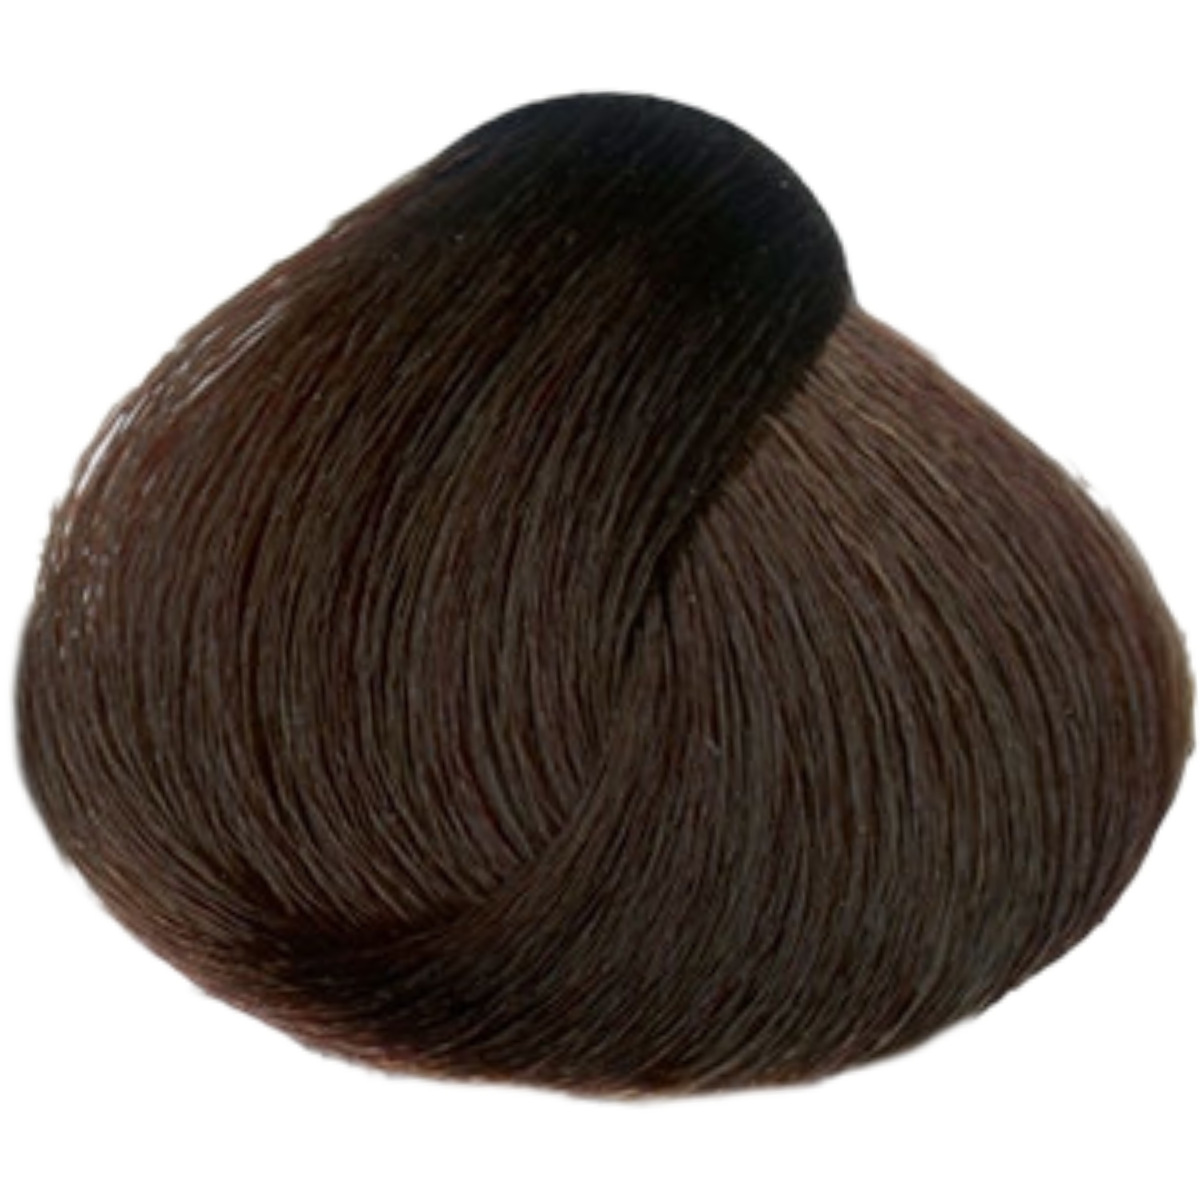 צבע שיער 6.52 DARK CHOCOLATE MAHOGANY BLONDE פארמויטה FarmaVita צבע לשיער 60 גרם